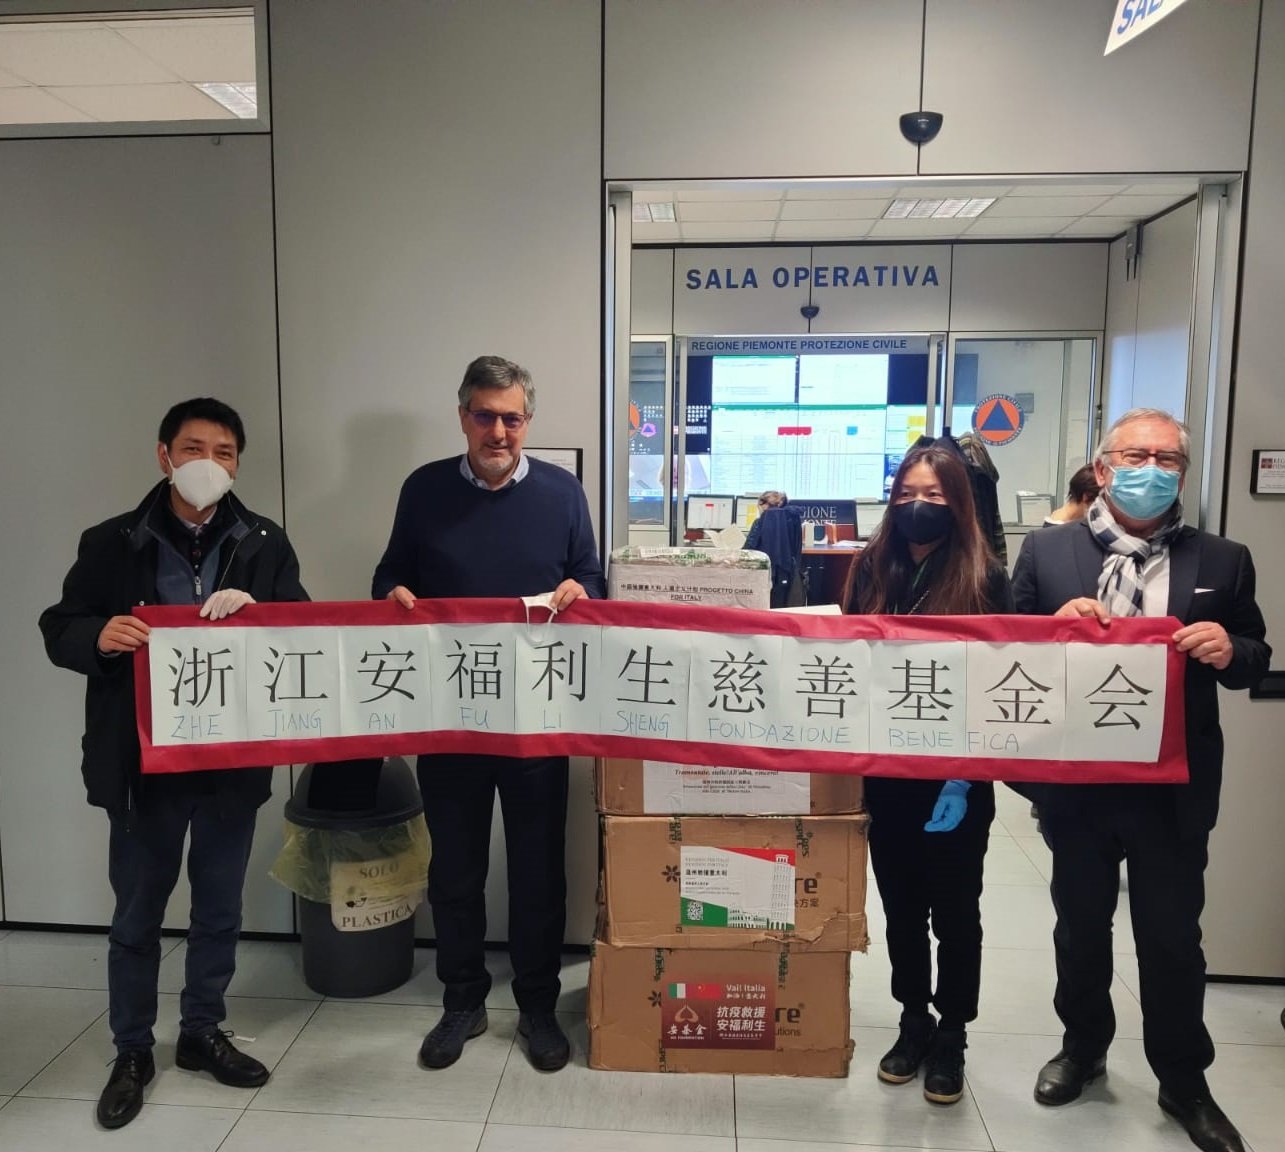 Coronavirus: Comunità Cinese dona al Piemonte 10 ventilatori. 2 andranno in provincia